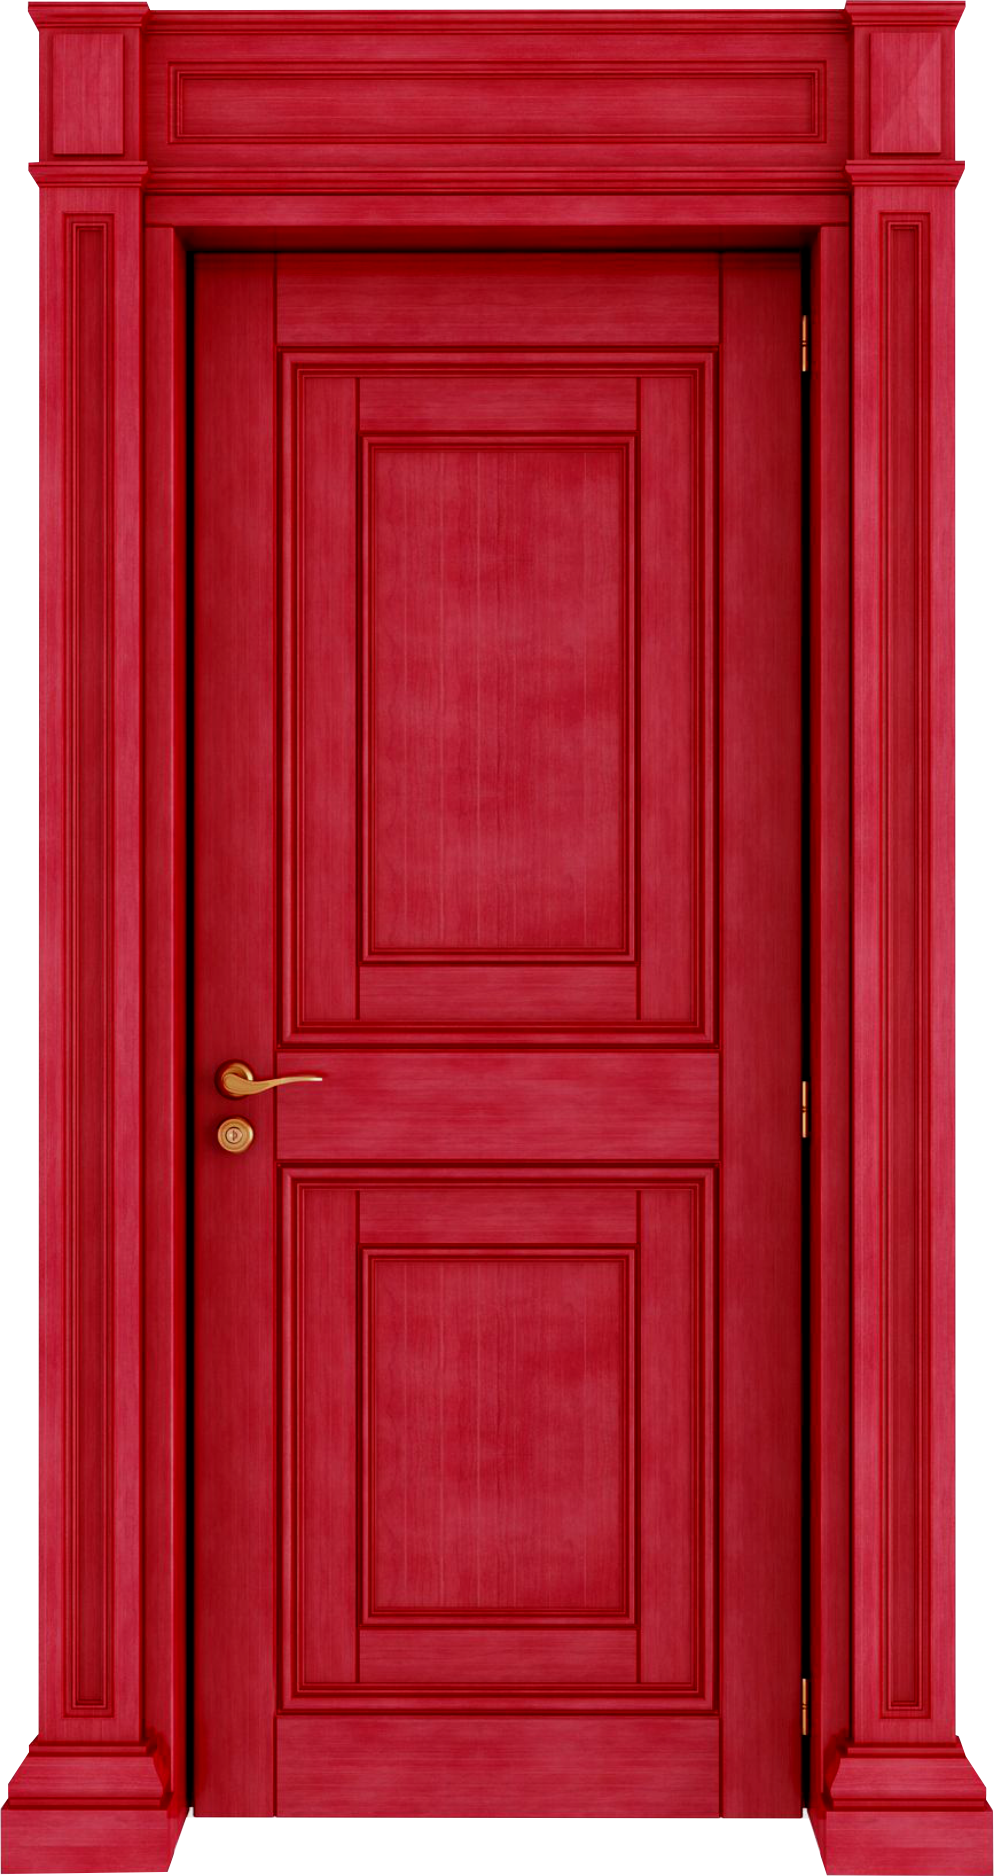 Open Door Clipart Images, Free Download